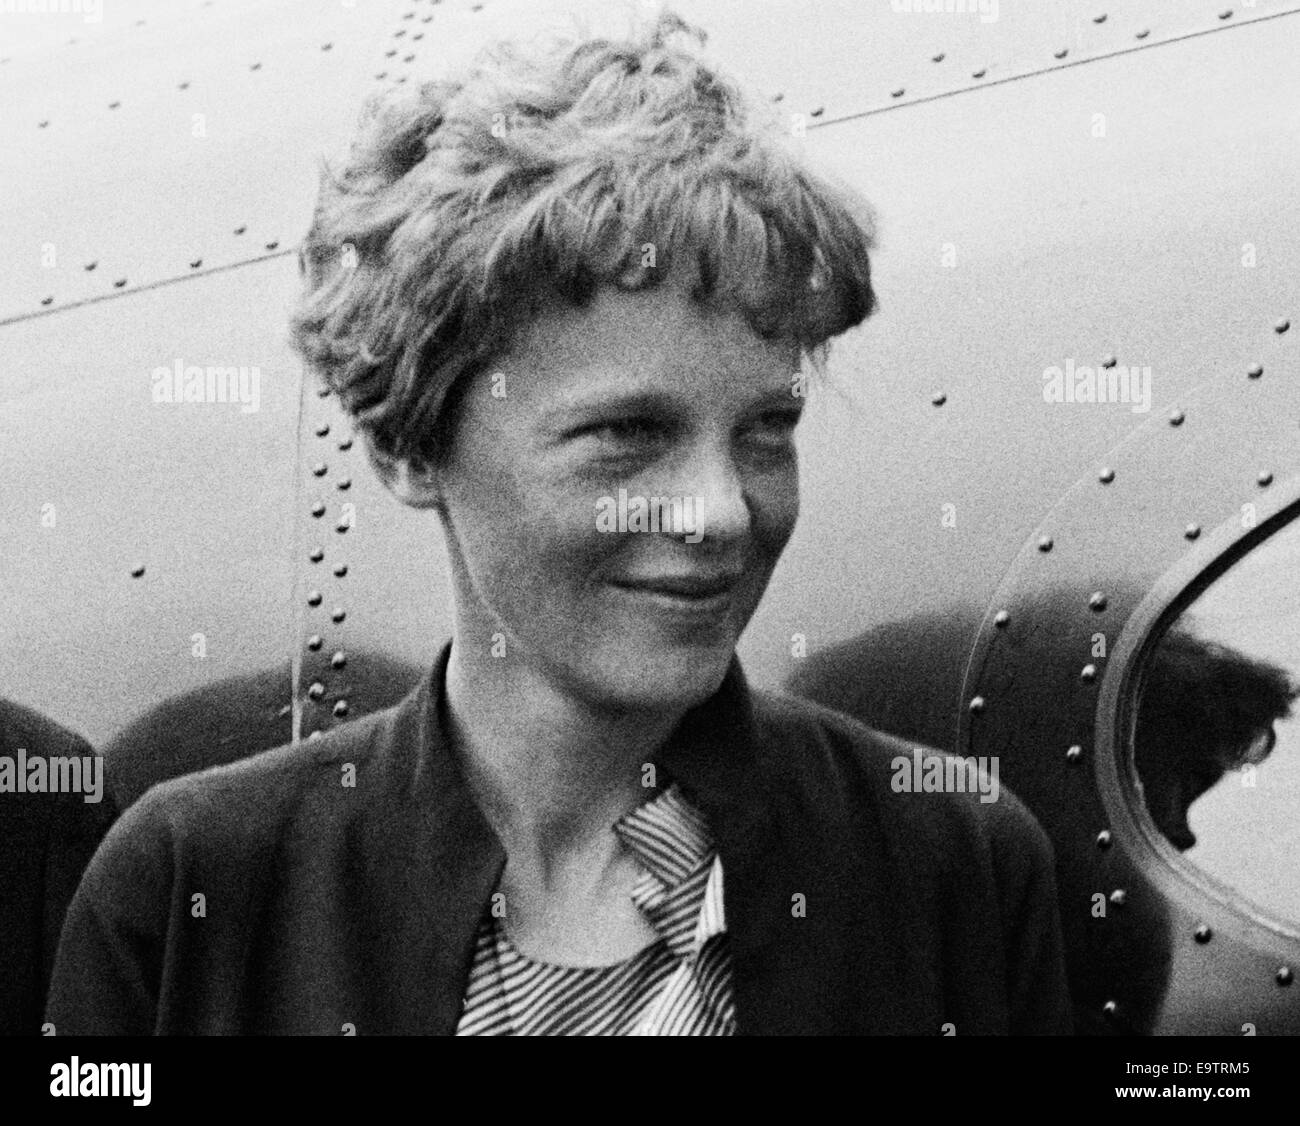 Photo d'époque de la pionnière et auteure de l'aviation américaine Amelia Earhart (1897 – déclarée morte en 1939) – Earhart et son navigateur Fred Noonan ont connu une célèbre disparition en 1937 alors qu'elle essayait de devenir la première femme à effectuer un vol de navigation du globe. Photo prise en 1932. Banque D'Images